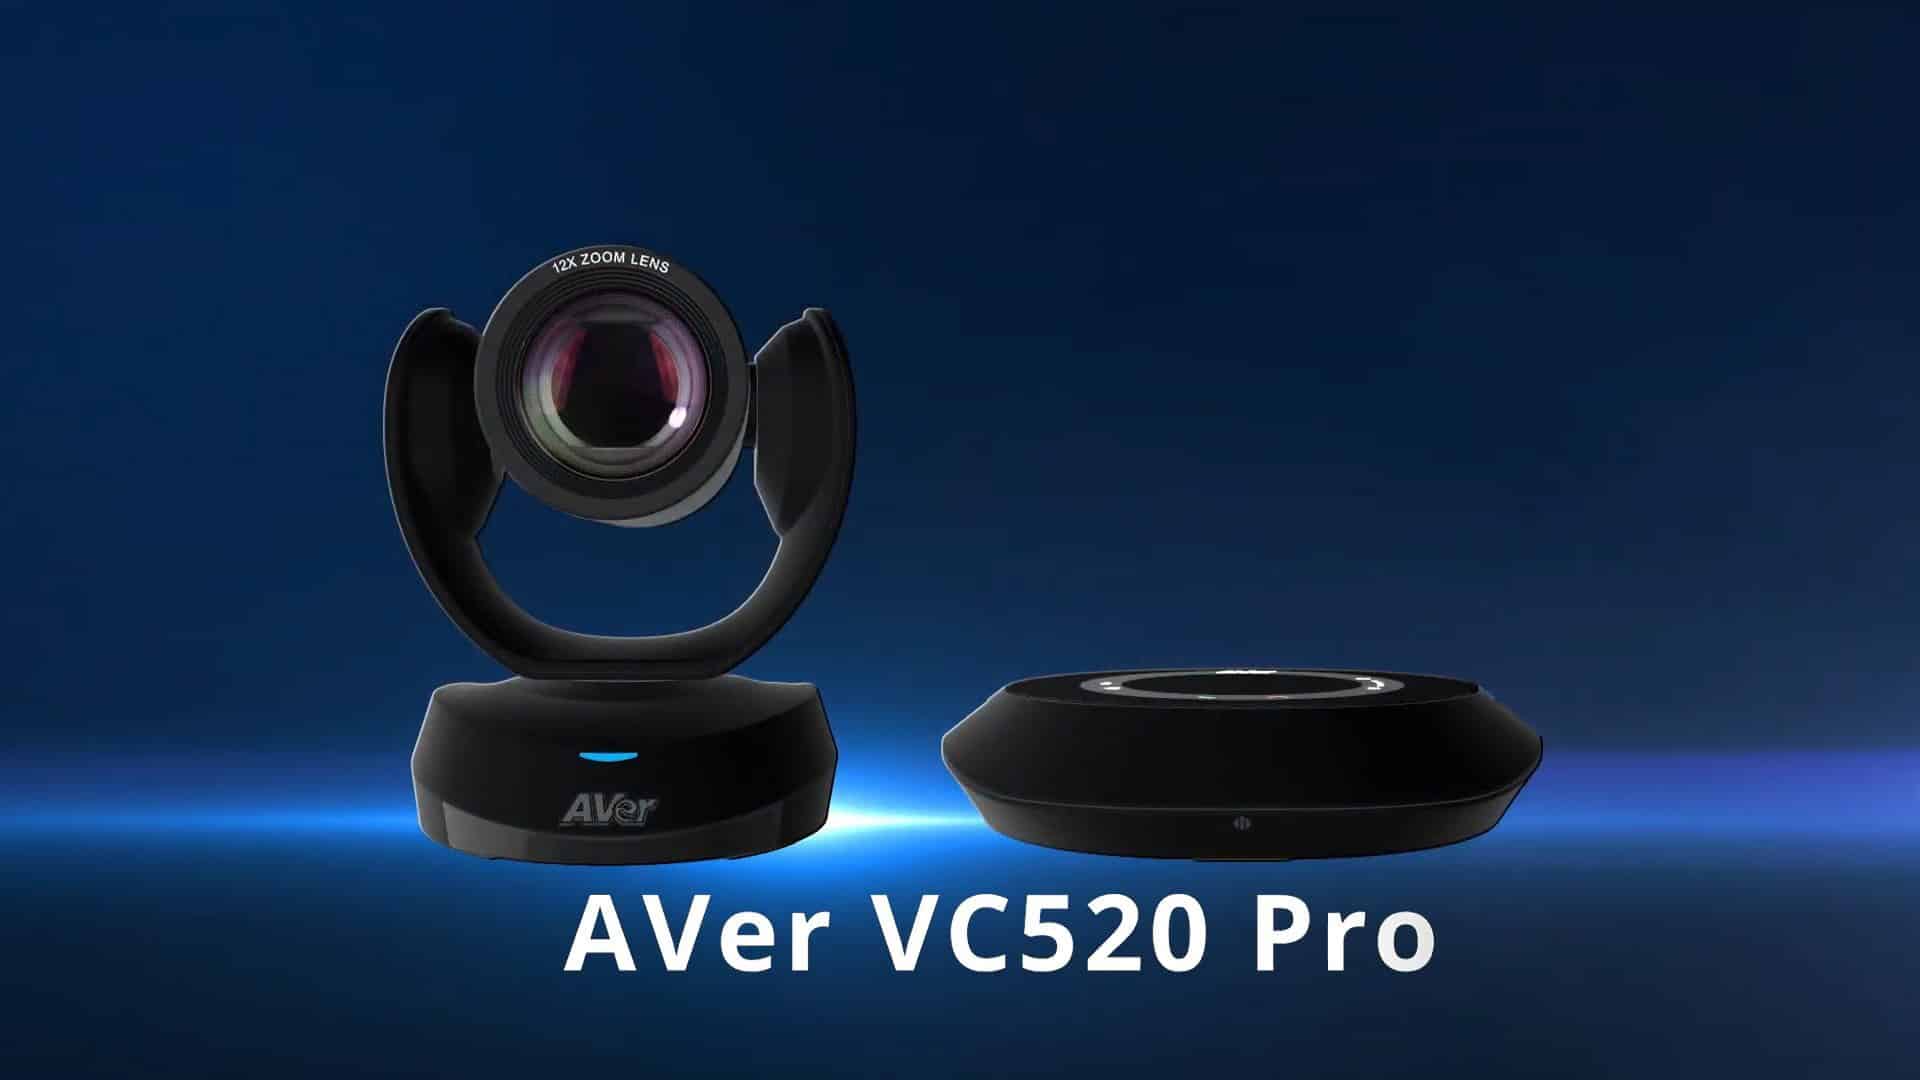 thiết bị hội nghị truyền hình aver vc520 pro phiên bản standard edition là gì